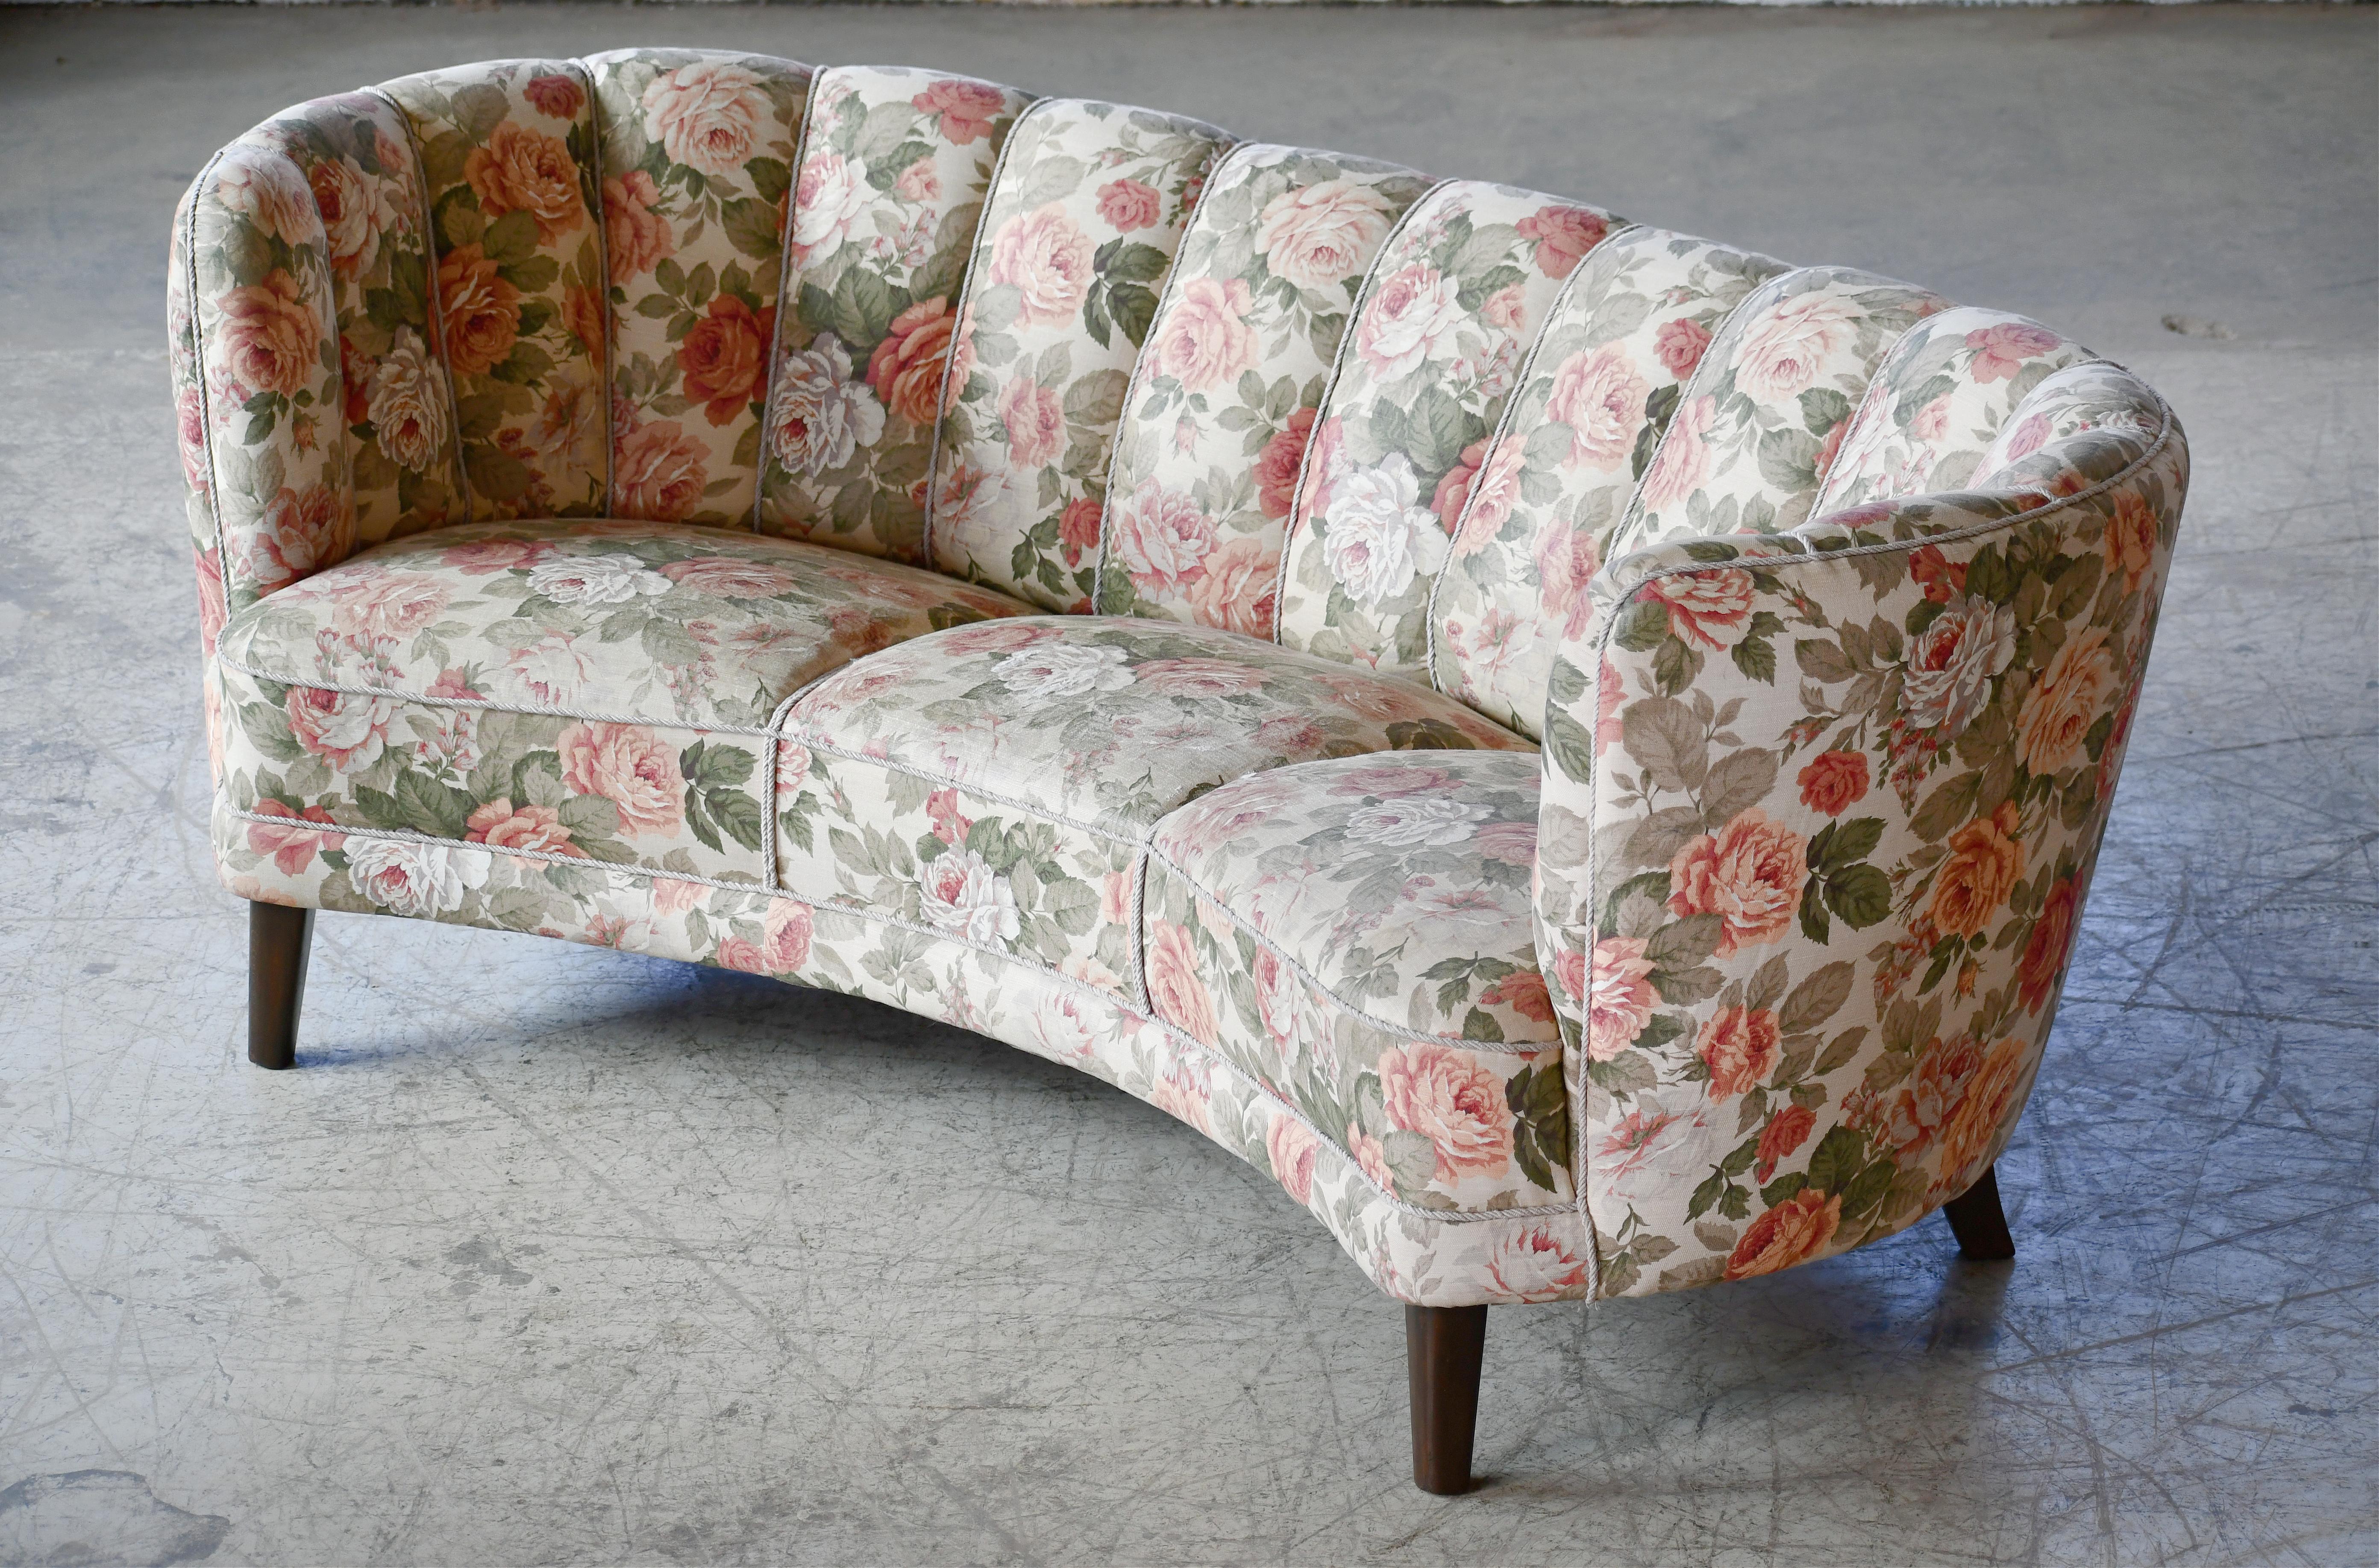 Schönes und sehr elegantes, großformatiges, geschwungenes Dreisitzer-Sofa aus den 1940er Jahren mit kanalisierter Rückenlehne. Die Sitzfläche und die Rückenlehne des Sofas sind gefedert, der Rahmen aus Buchenholz ist solide und robust. Der originale